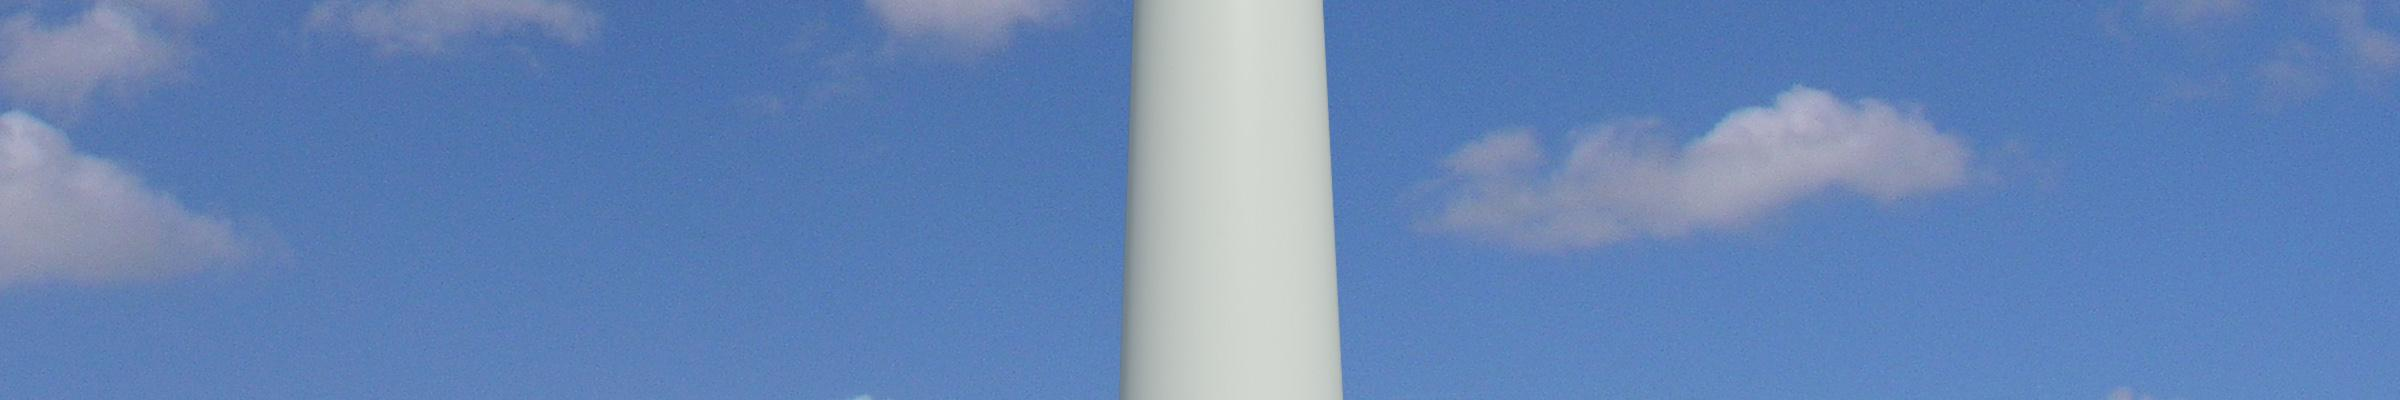 34 Kuva 7 Tuulivoimalan rakenne. Kuvasovite Pöyry, Jarkko Männistö. 3.2.2 Tuulivoima maailmalla Kesäkuussa 2011 tuulivoiman maailmanlaajuinen tuotantokapasiteetti ylitti 215 000 MW rajan.